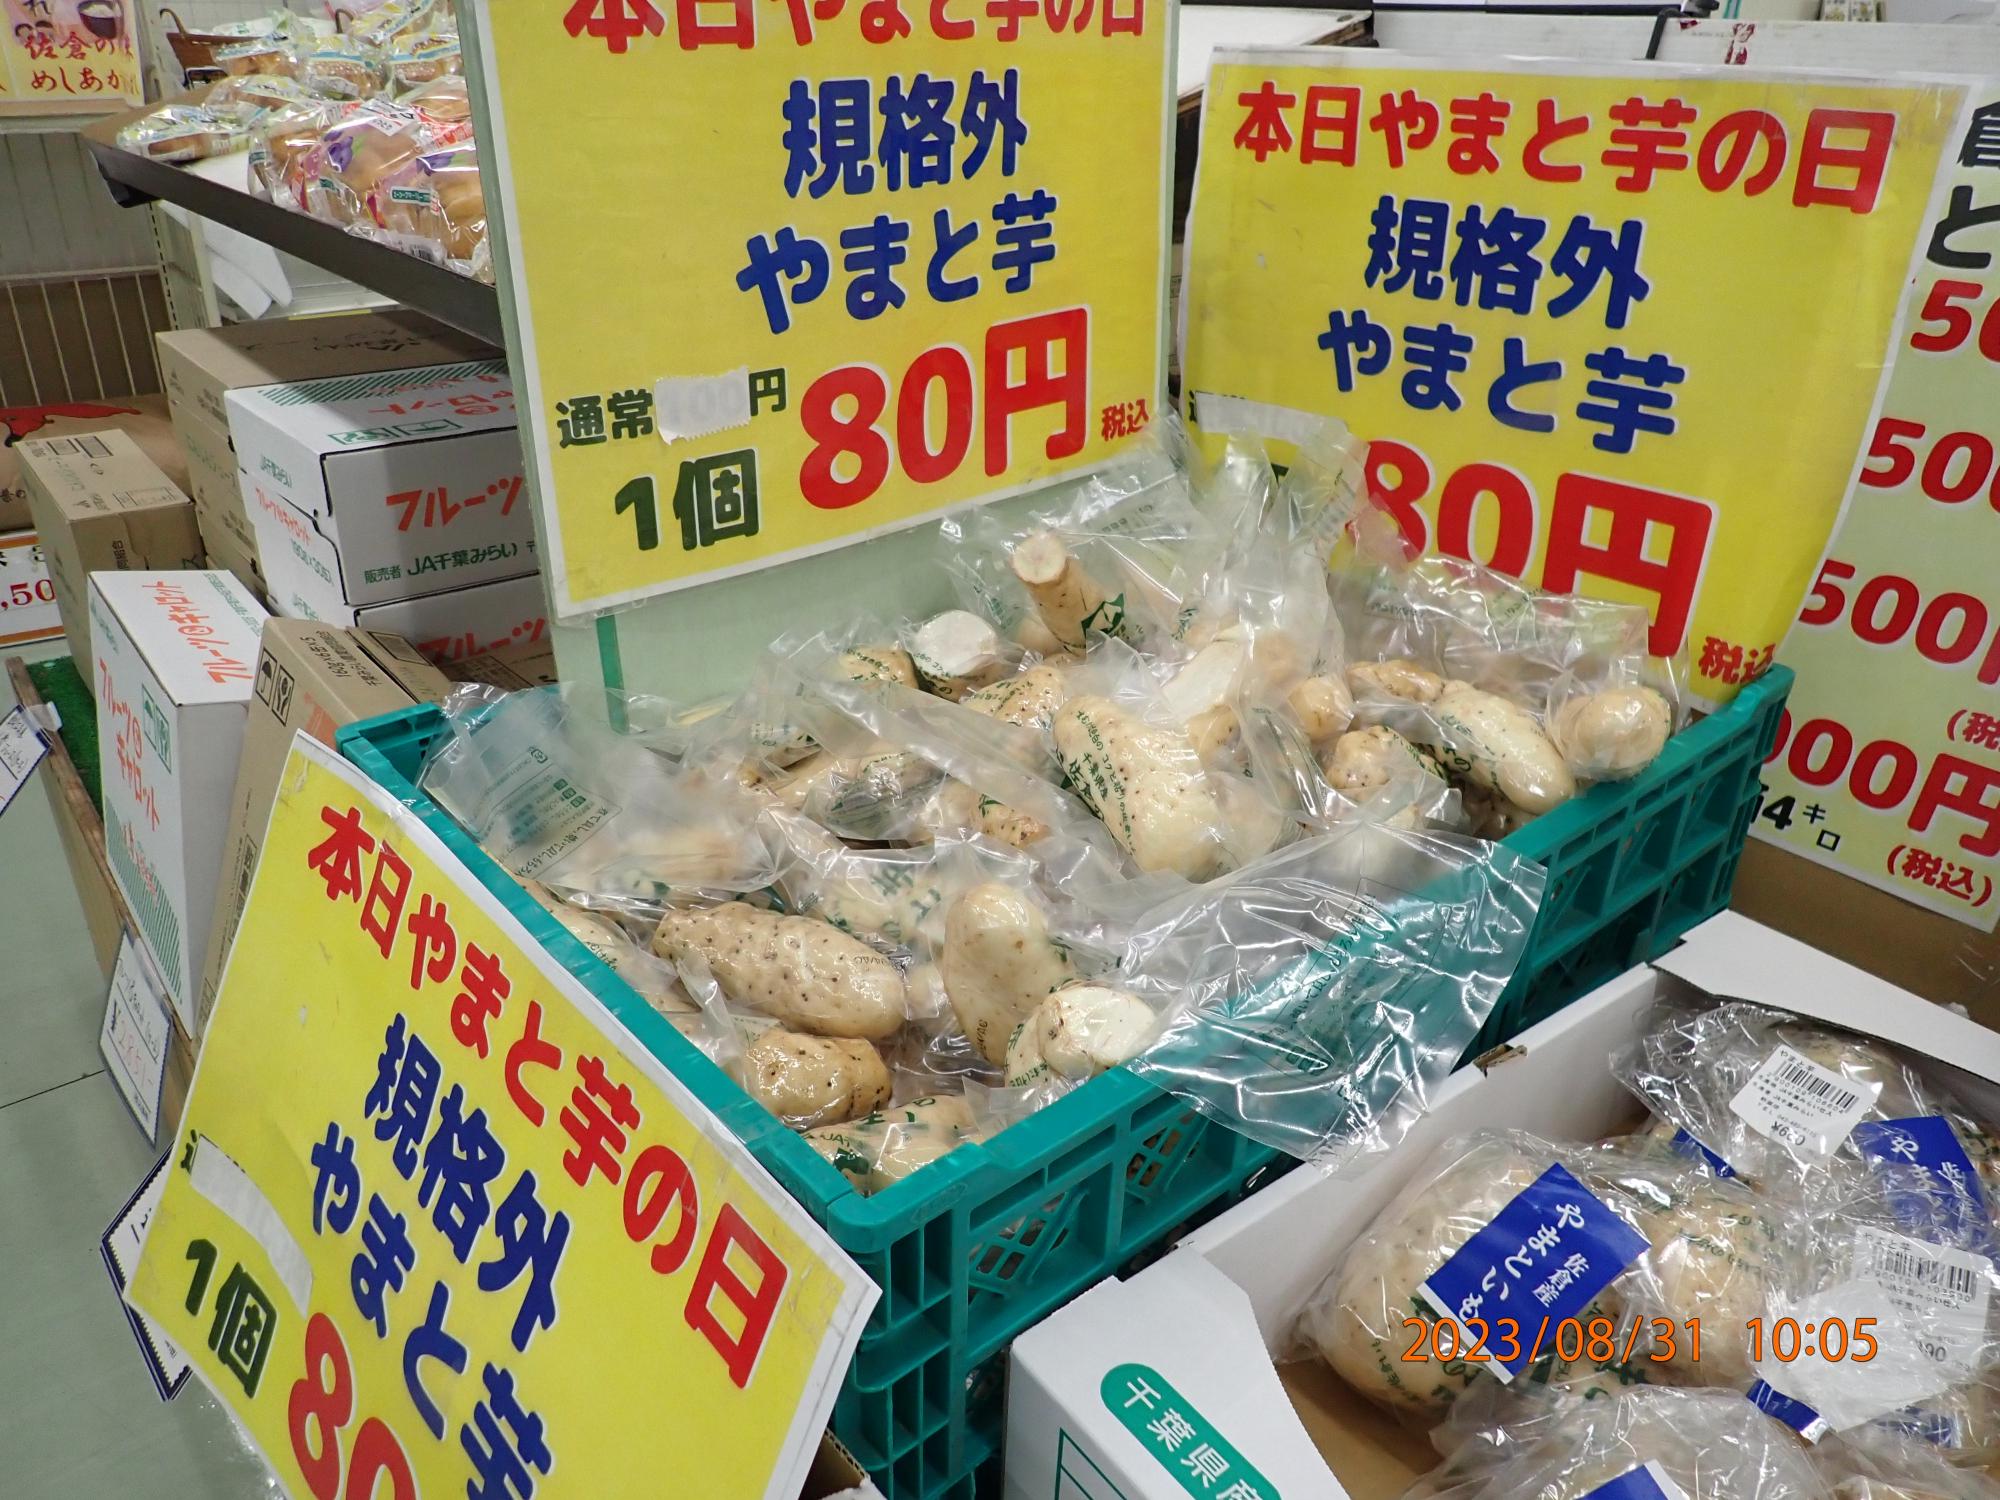 佐倉市特産のヤマトイモ